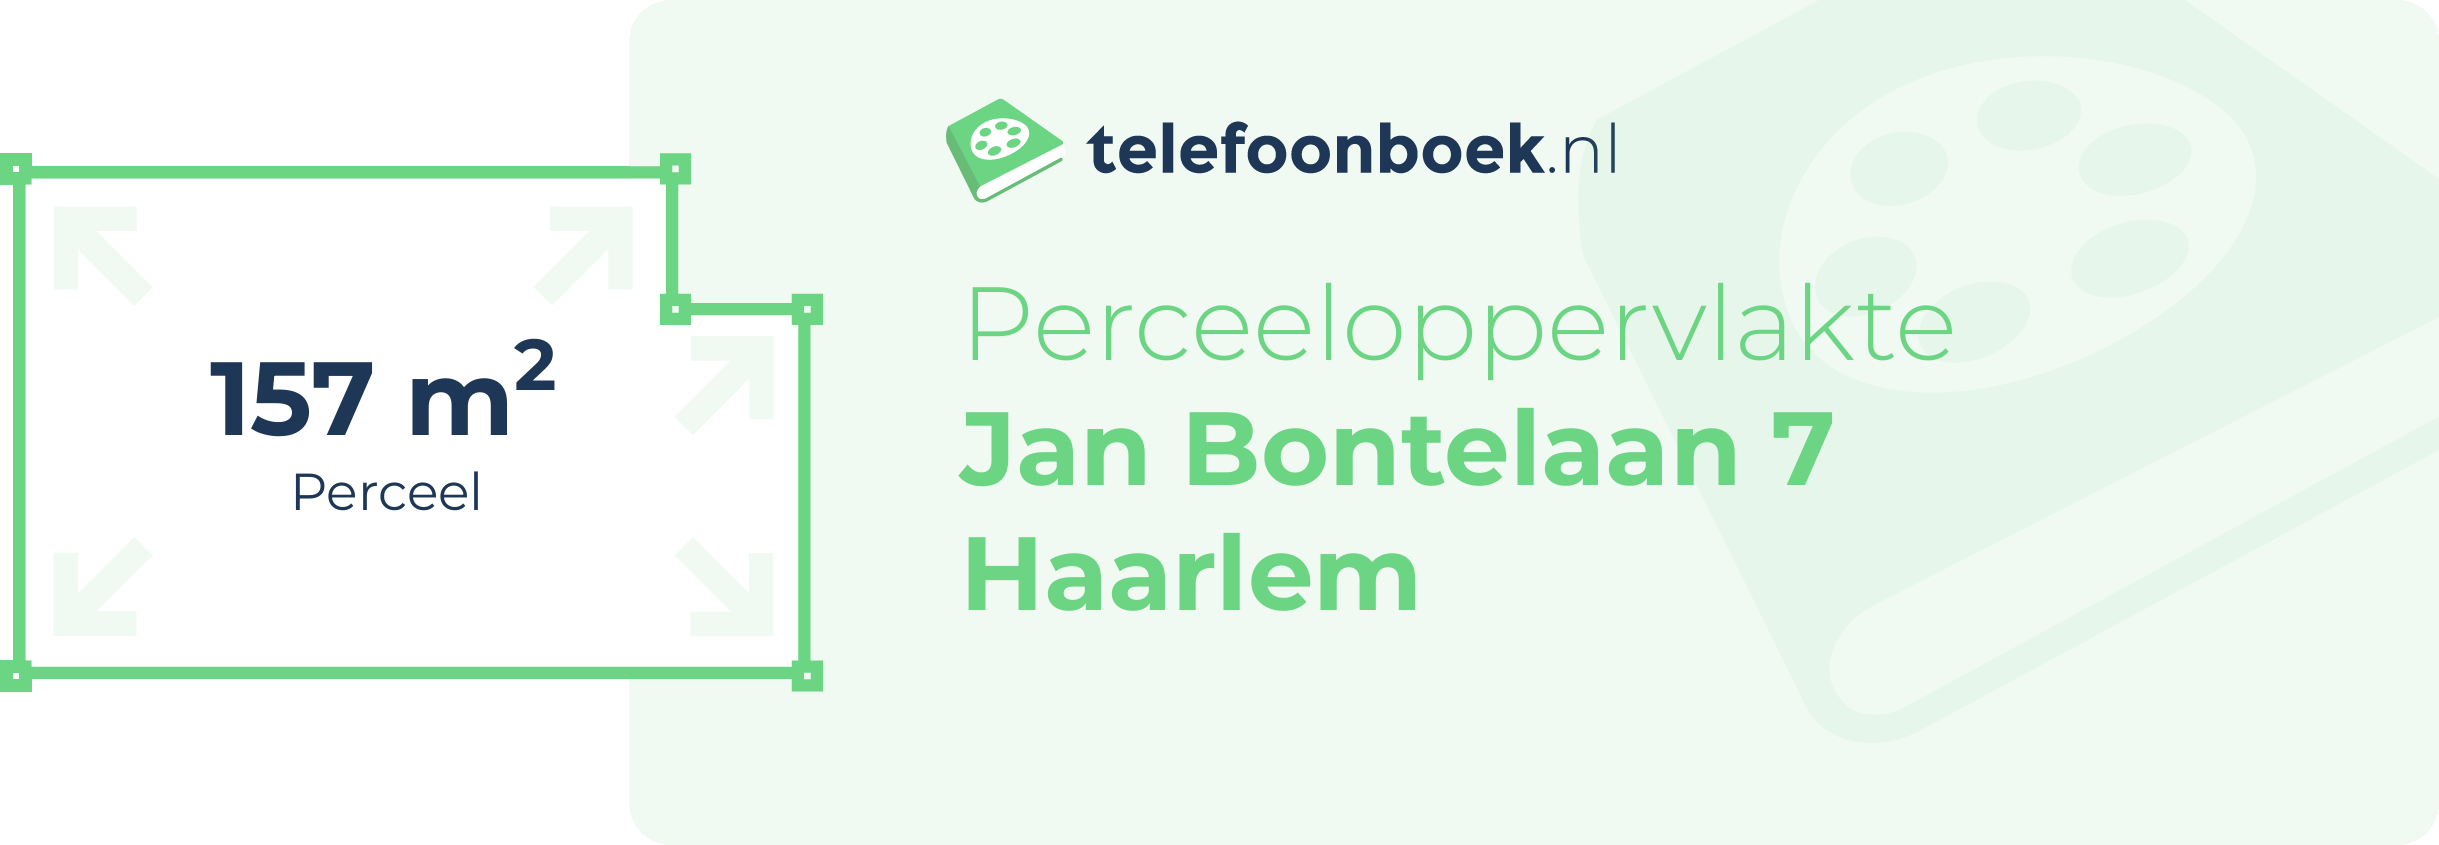 Perceeloppervlakte Jan Bontelaan 7 Haarlem